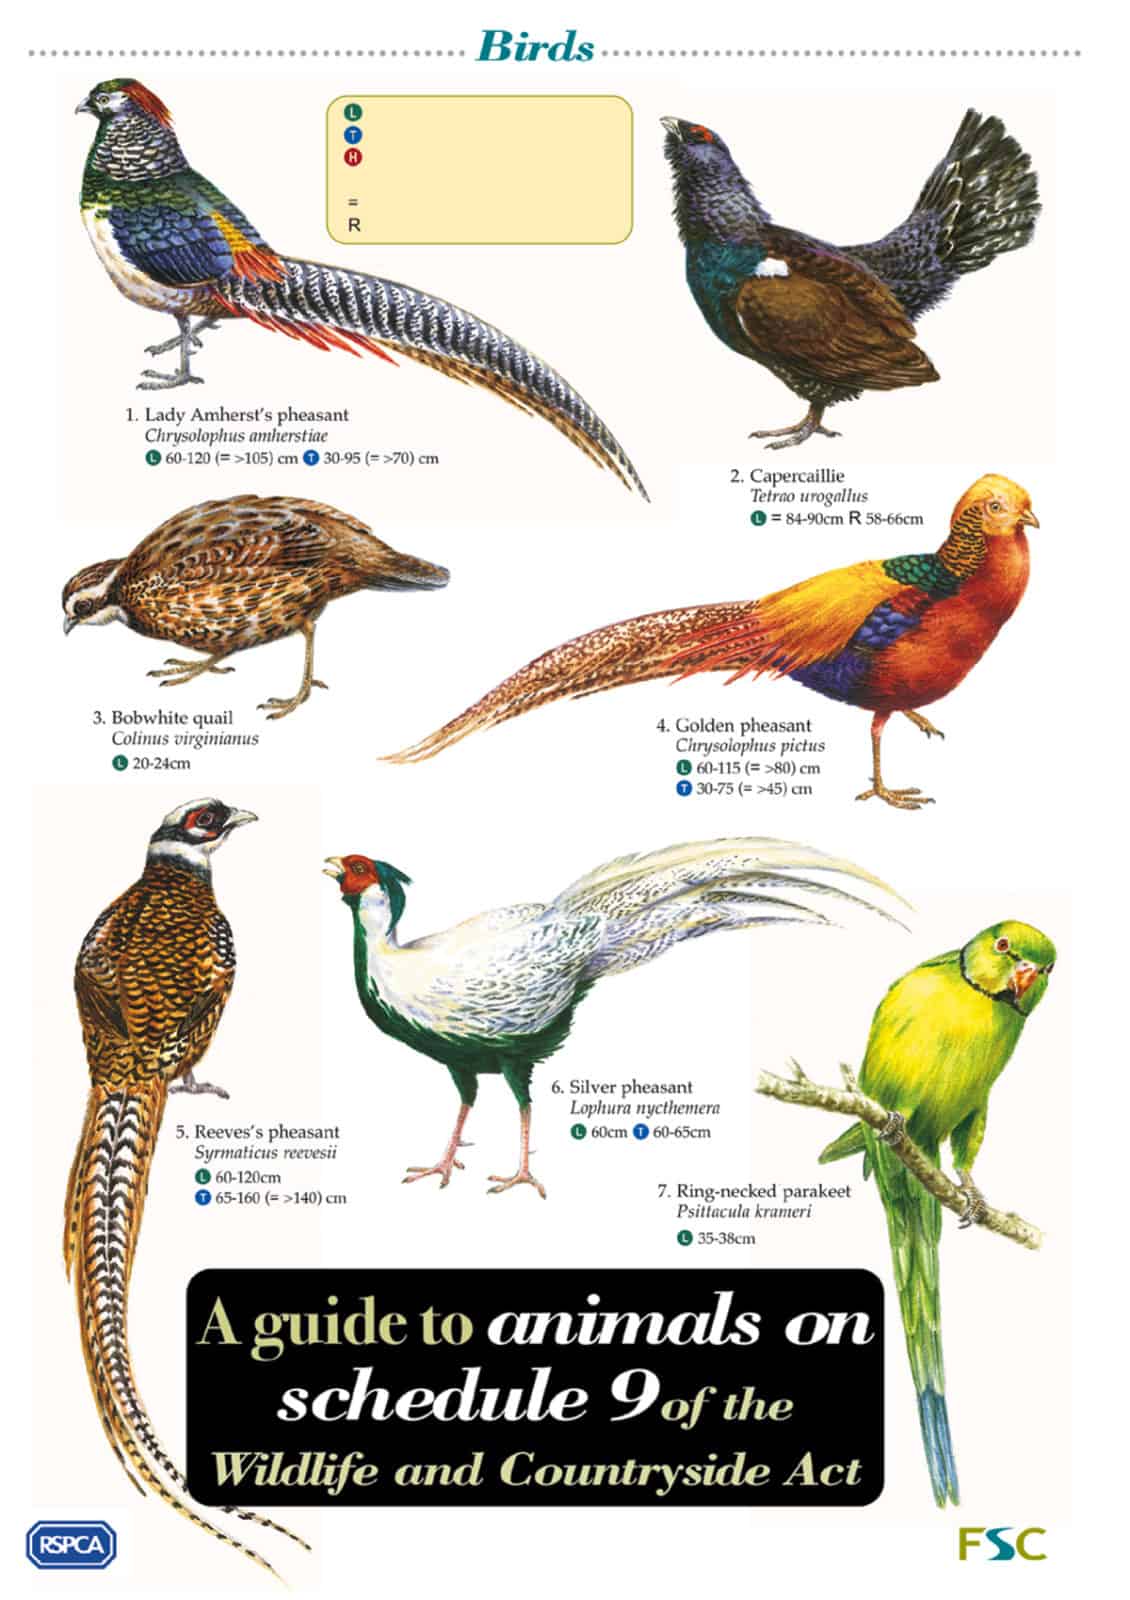 schedule 9 animals guide